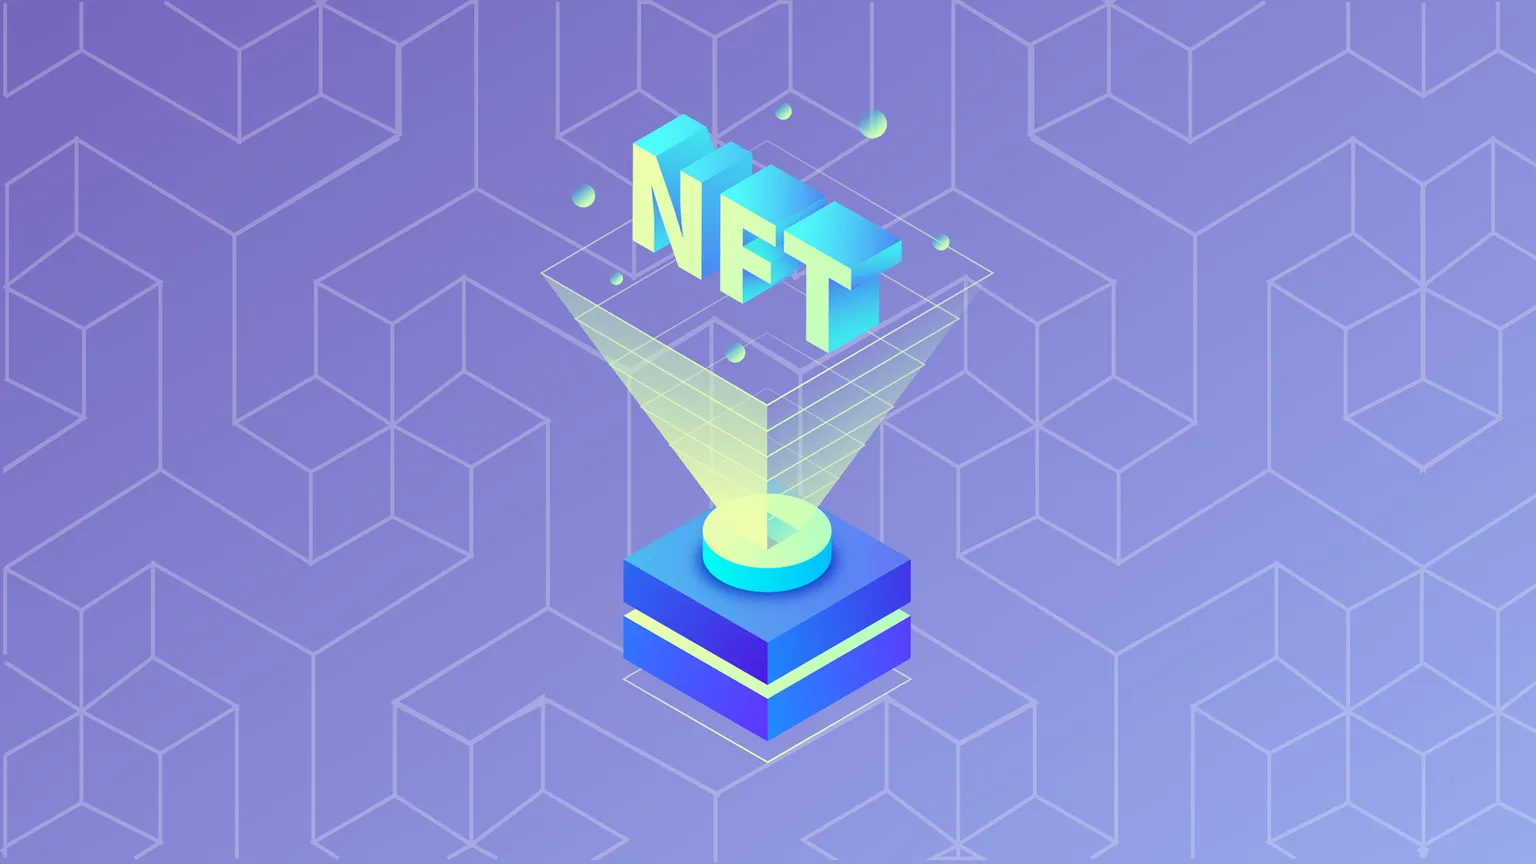 Los NFT, o tokens no fungibles, son activos digitales criptográficamente únicos. Imagen: Decrypt